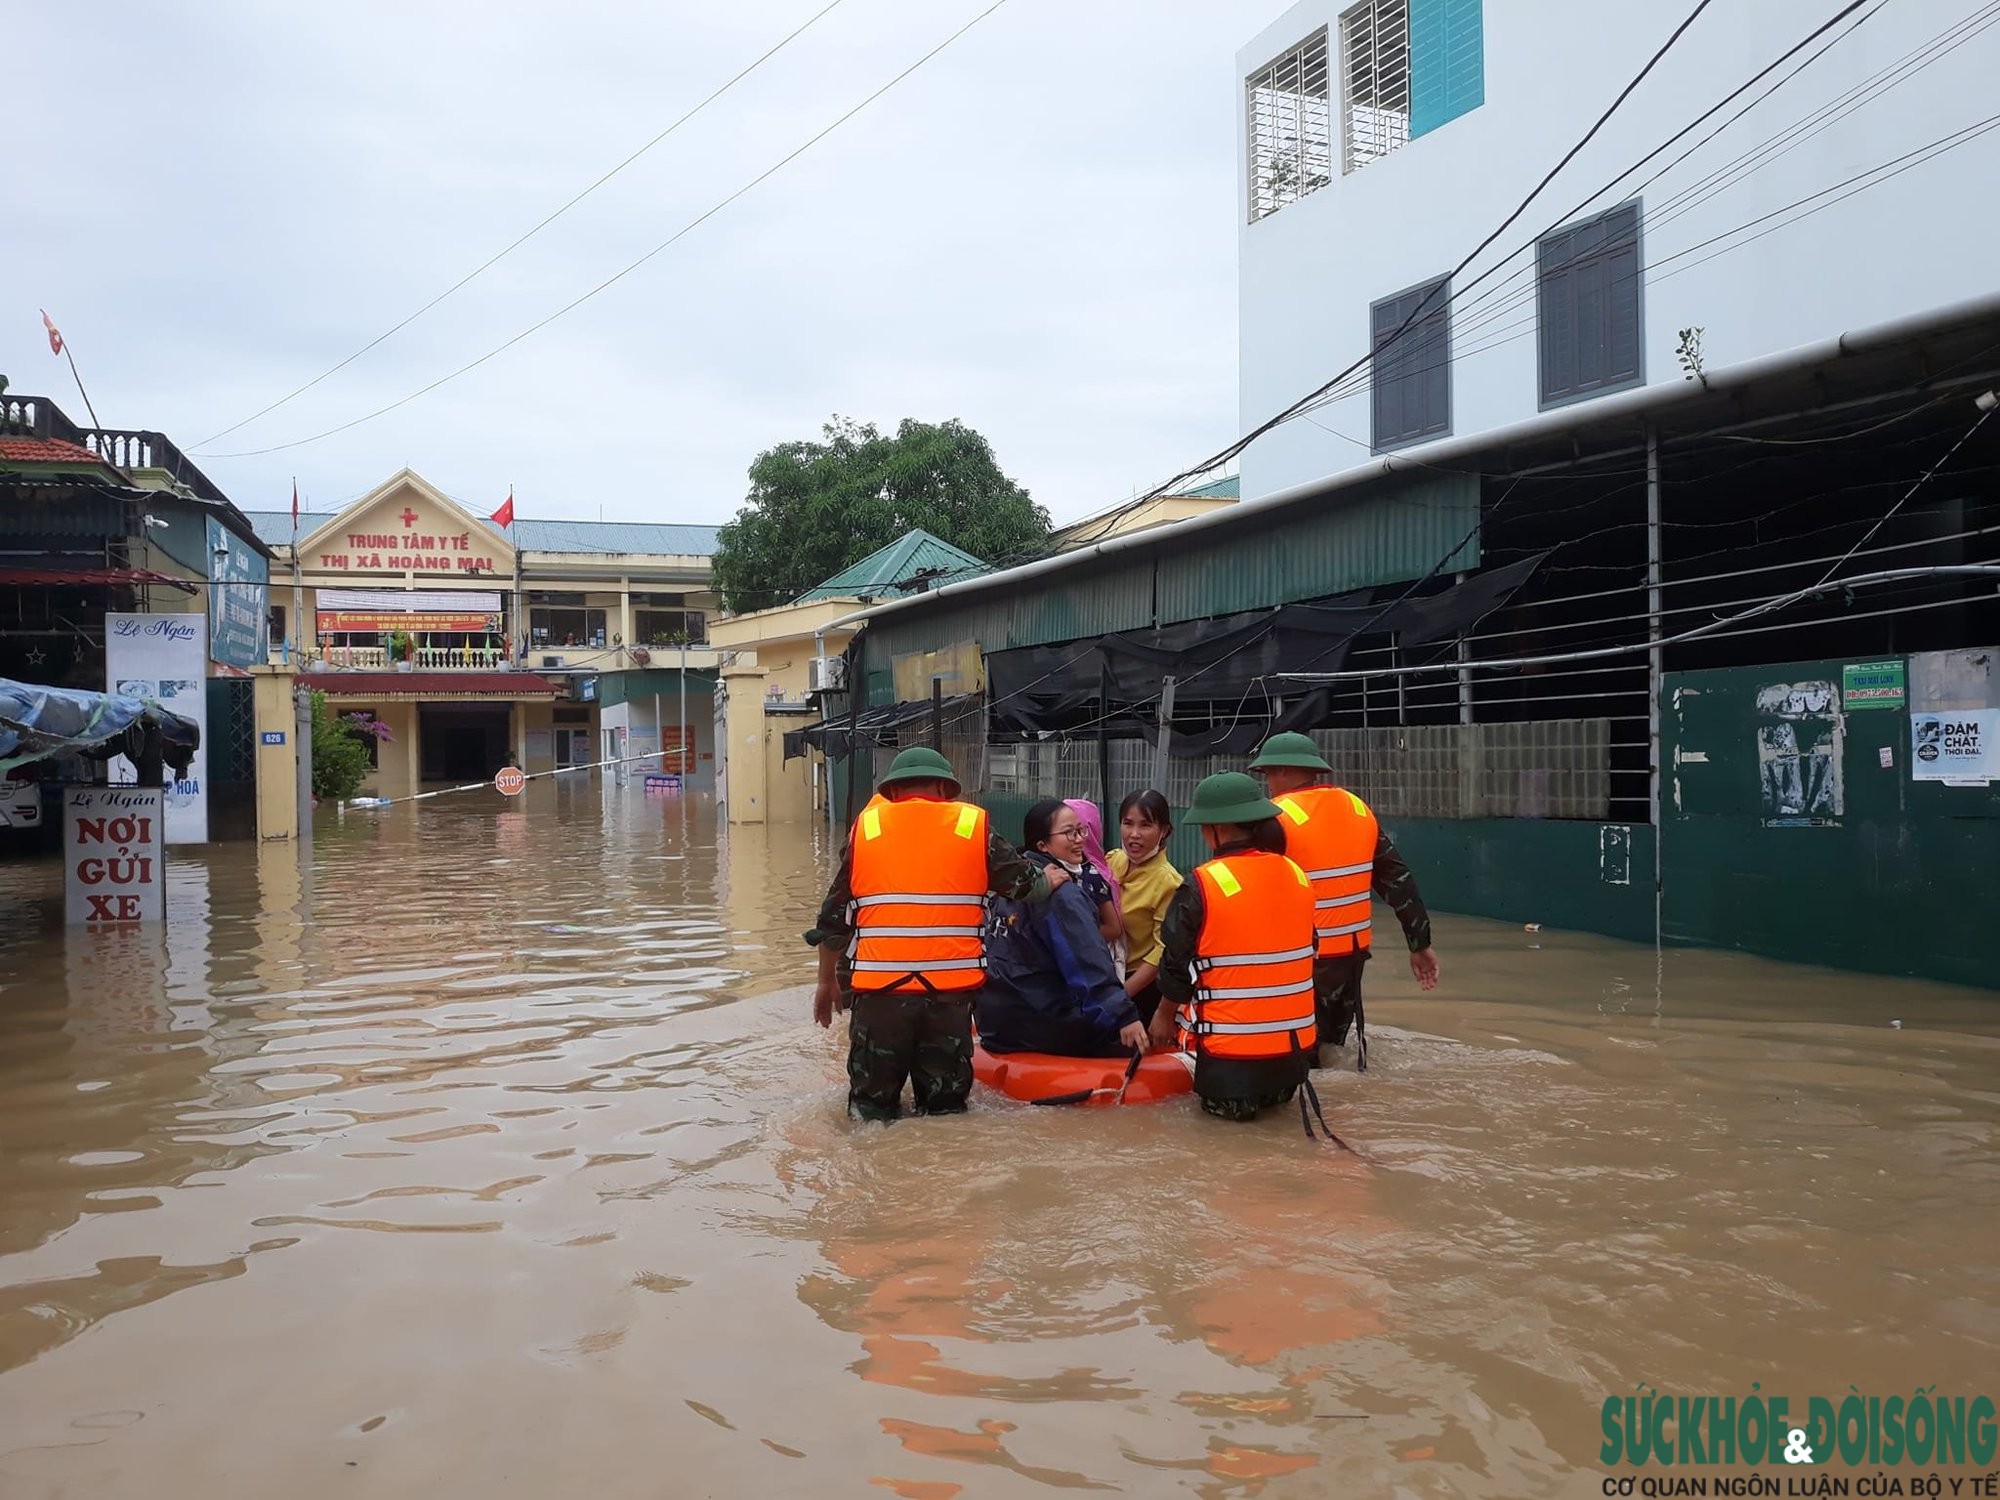  TTYT Thị xã Hoàn mai bị ngập lụt phải di dời bệnh nhân đến nơi An toàn. Ảnh: Trần Thanh Yên